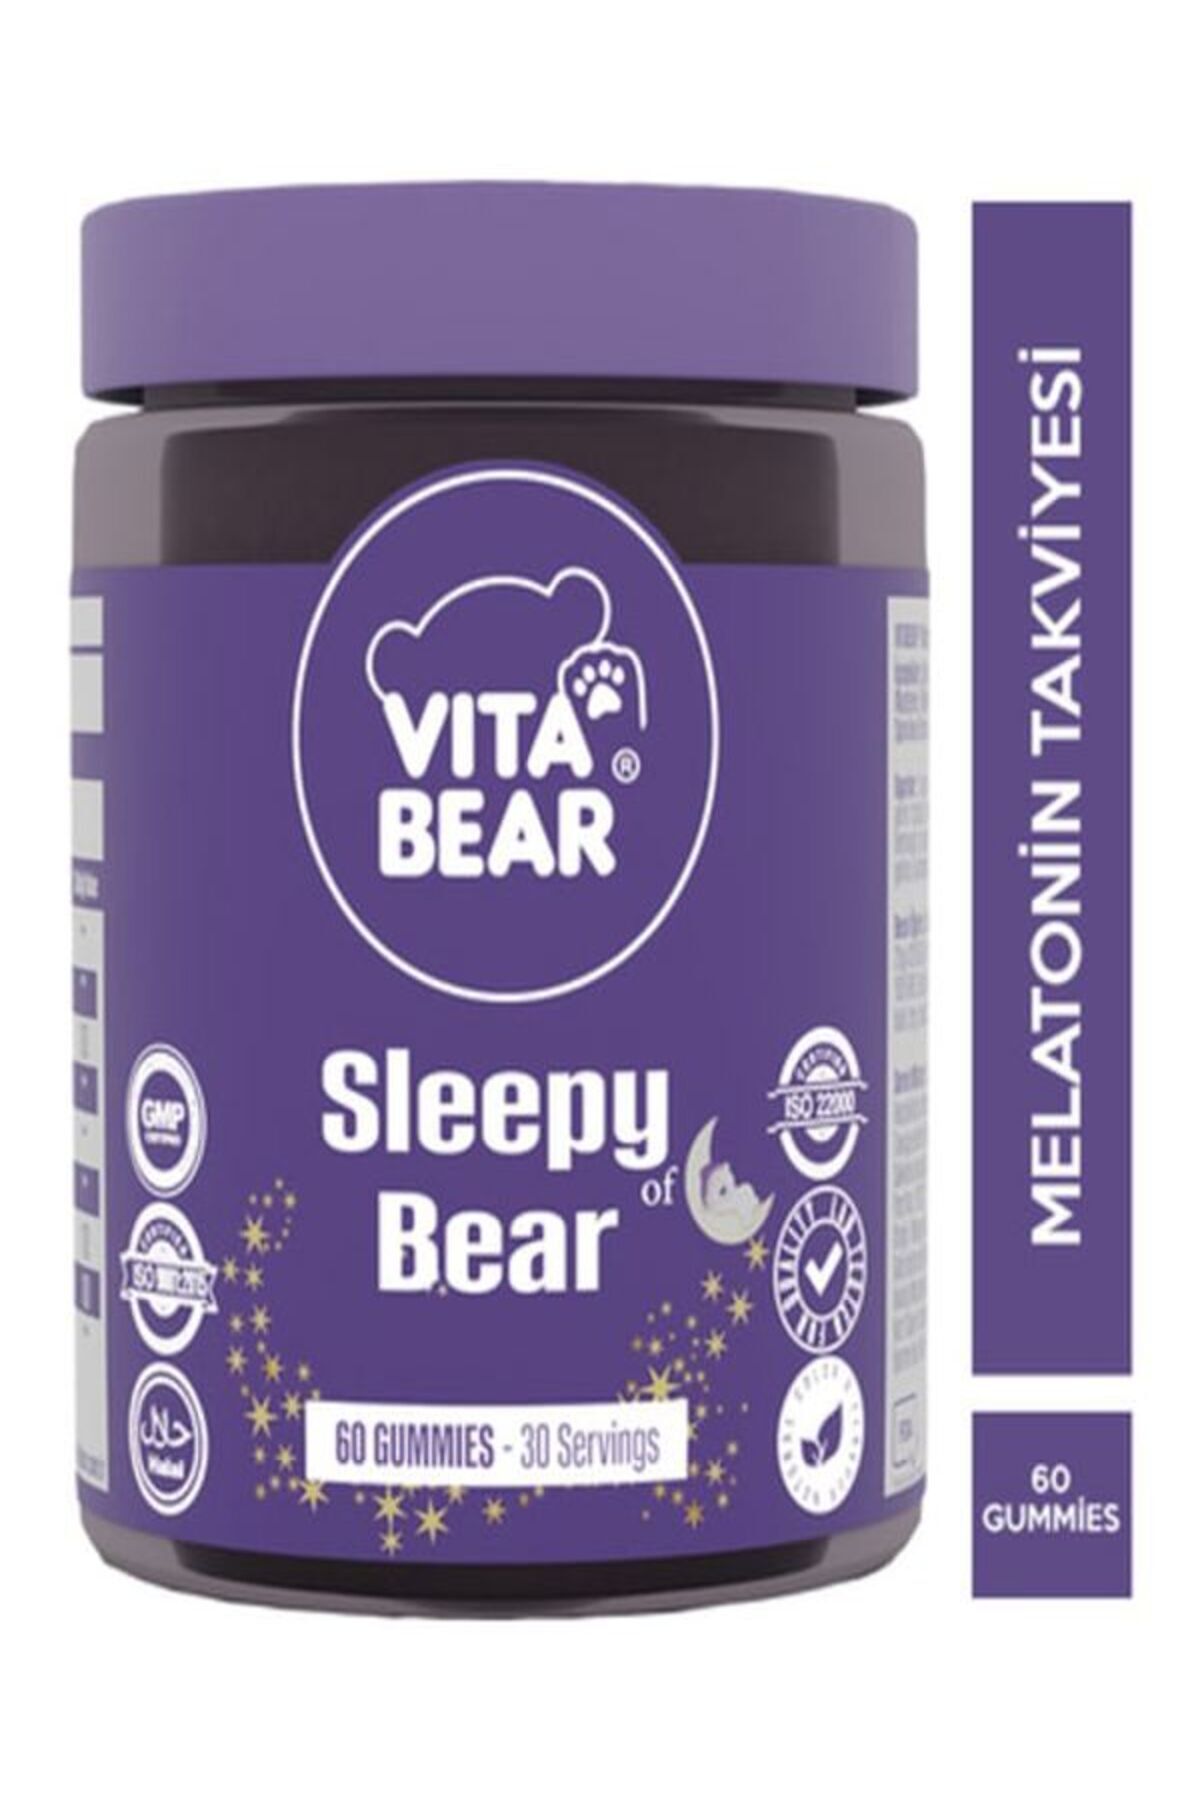 Vita Bear Sleepy Bear Uyku Düzenleyici Vitamin 60 Gummies